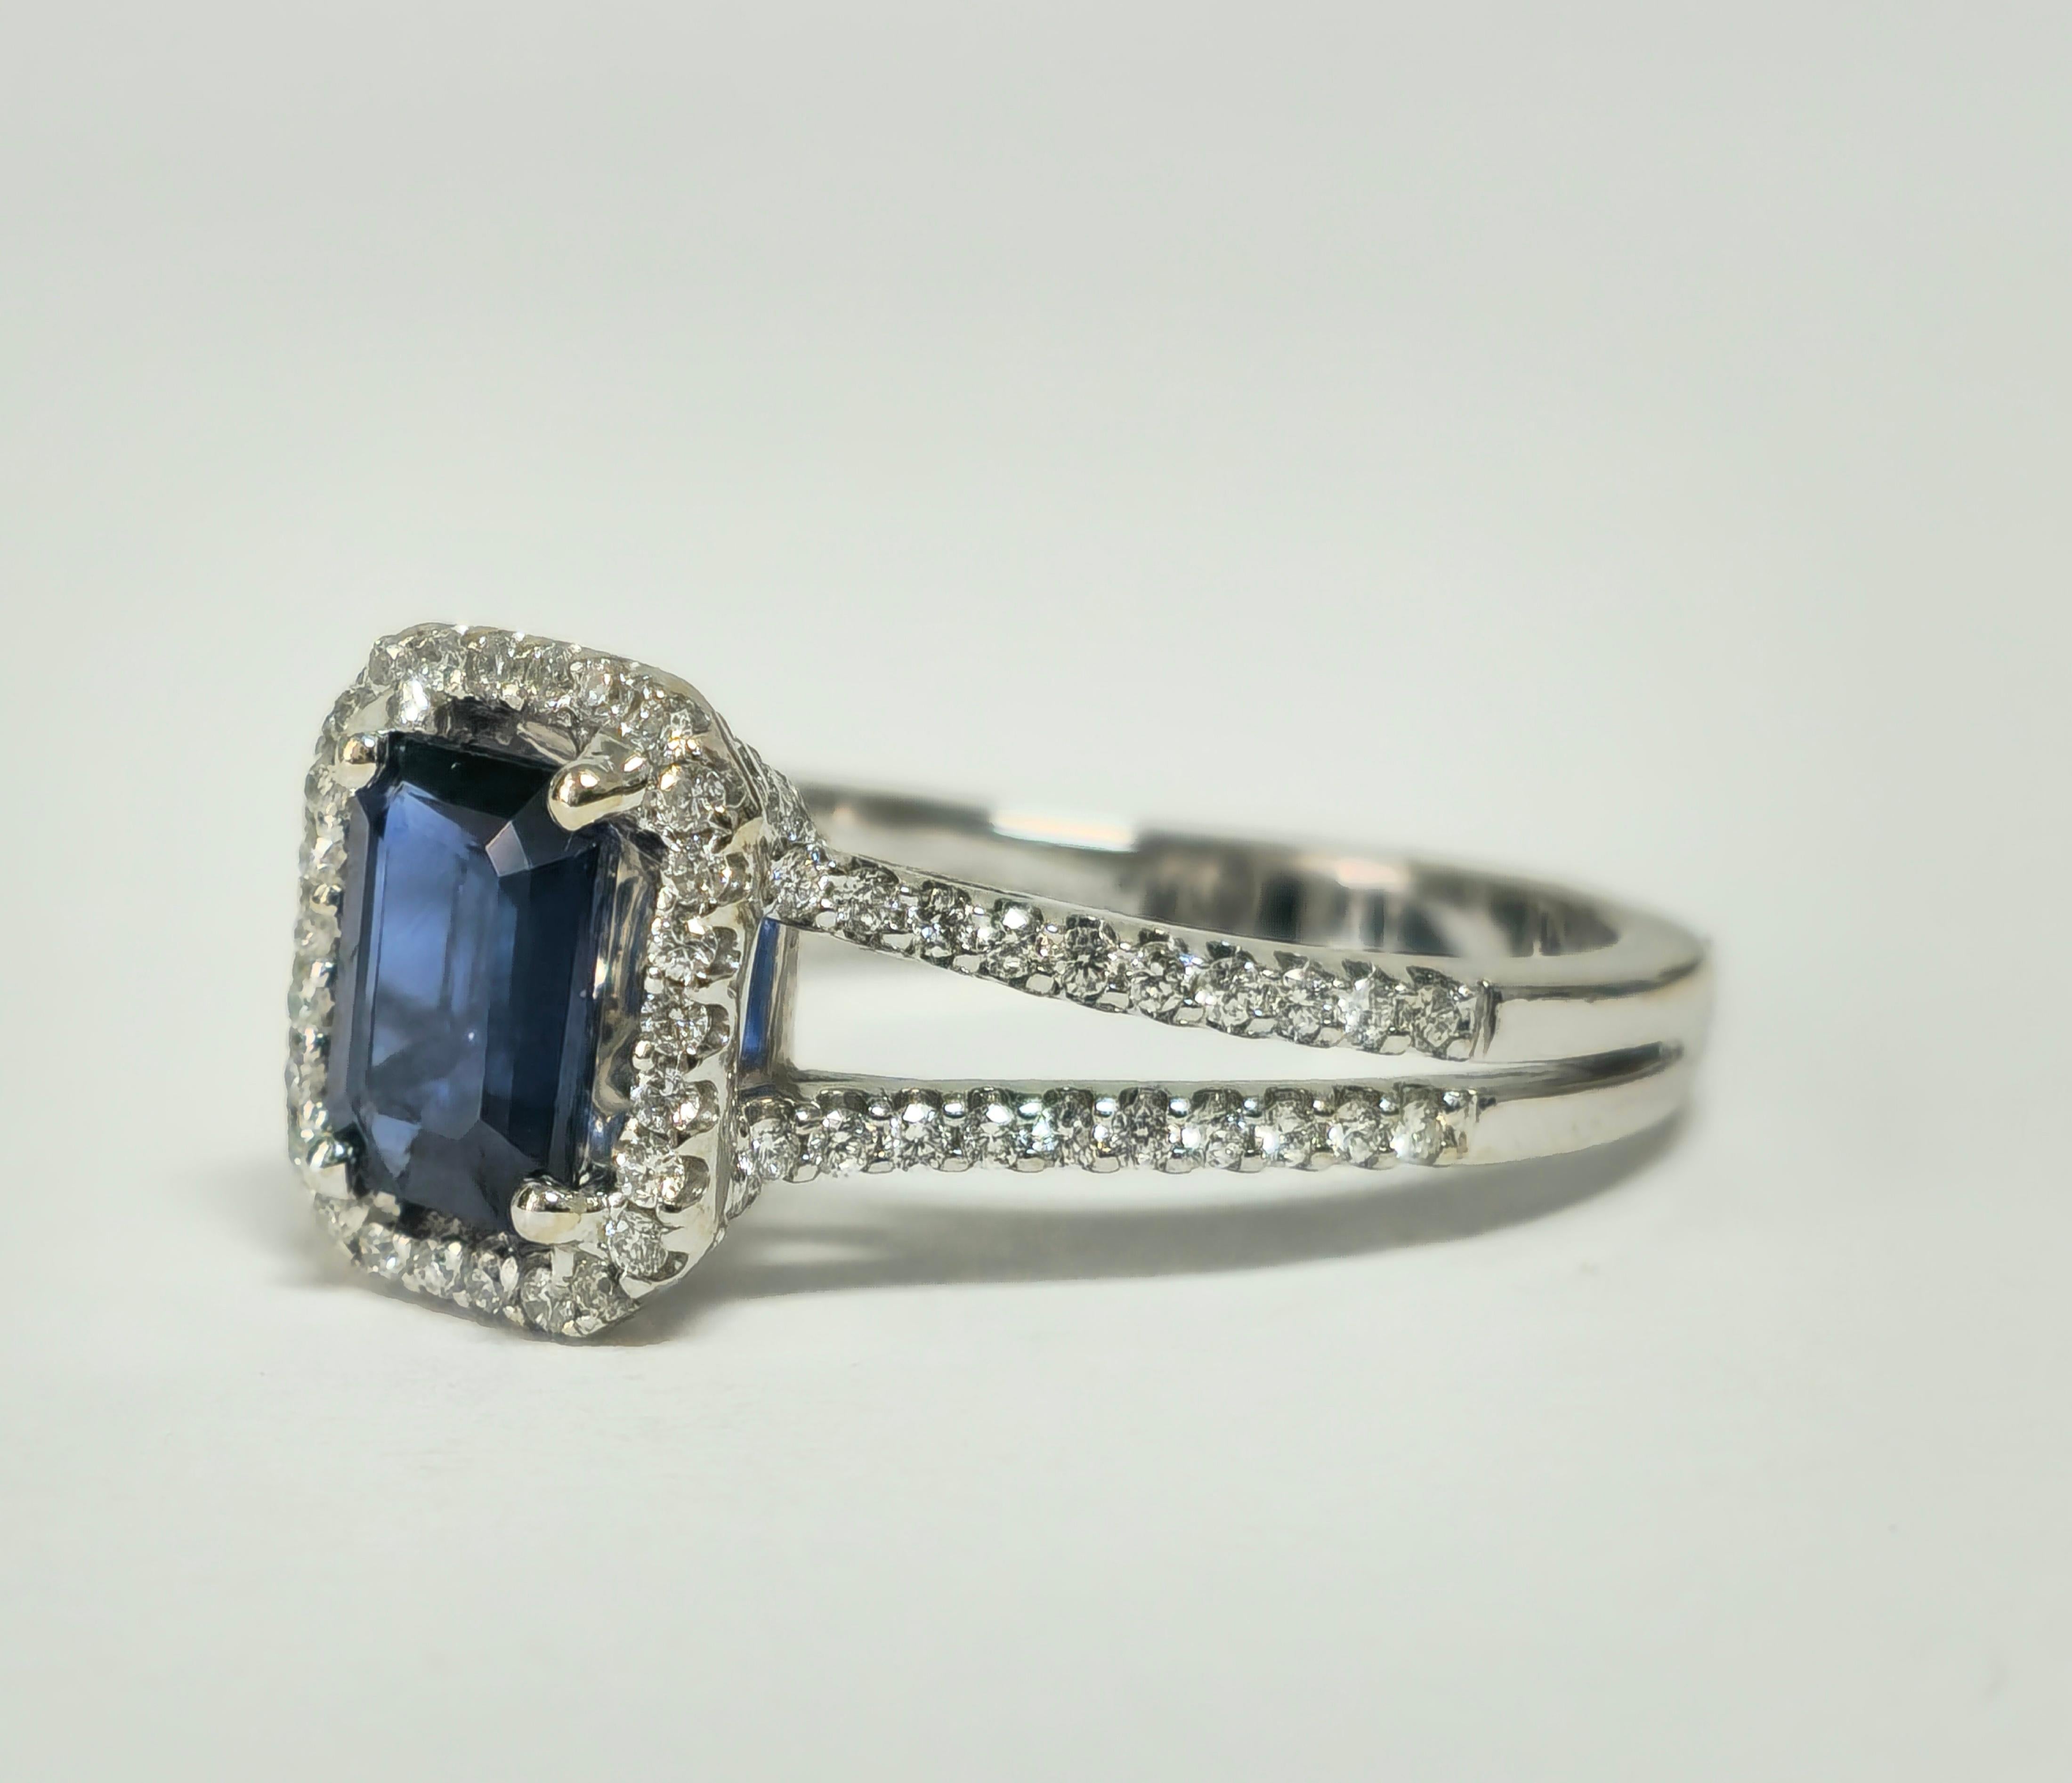 Gönnen Sie sich Raffinesse mit unserem blauen Saphir- und Diamantring im Vintage Art Deco-Stil, der aus luxuriösem 18-karätigem Weißgold gefertigt ist. Mit einem atemberaubenden blauen Saphir von 1,00 Karat im Smaragdschliff, der in Zacken gefasst